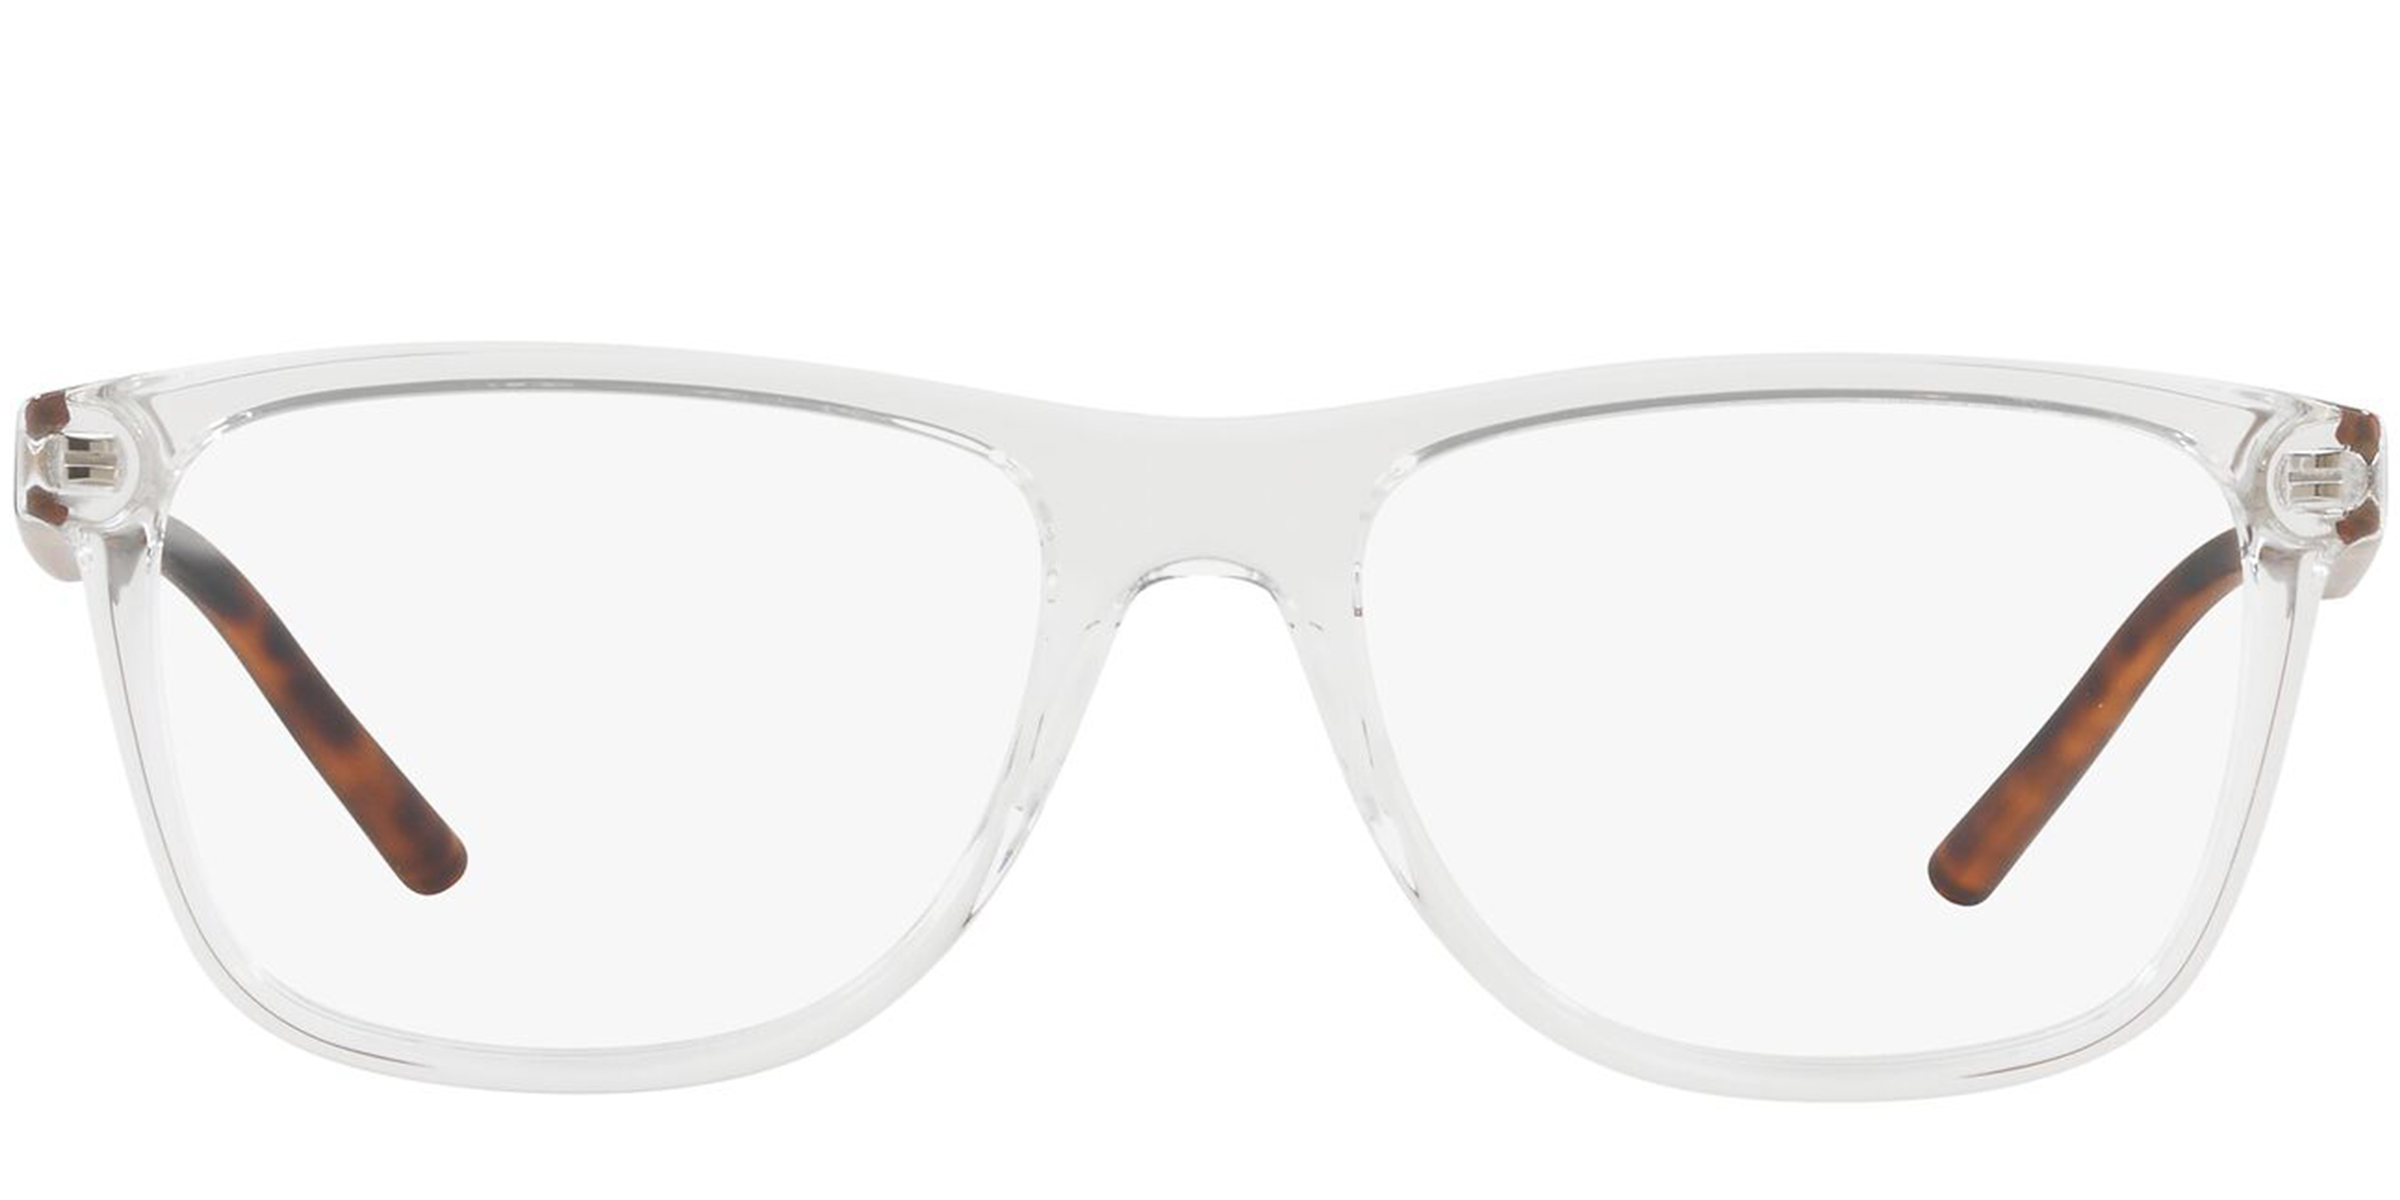 Ax Glasses | lupon.gov.ph